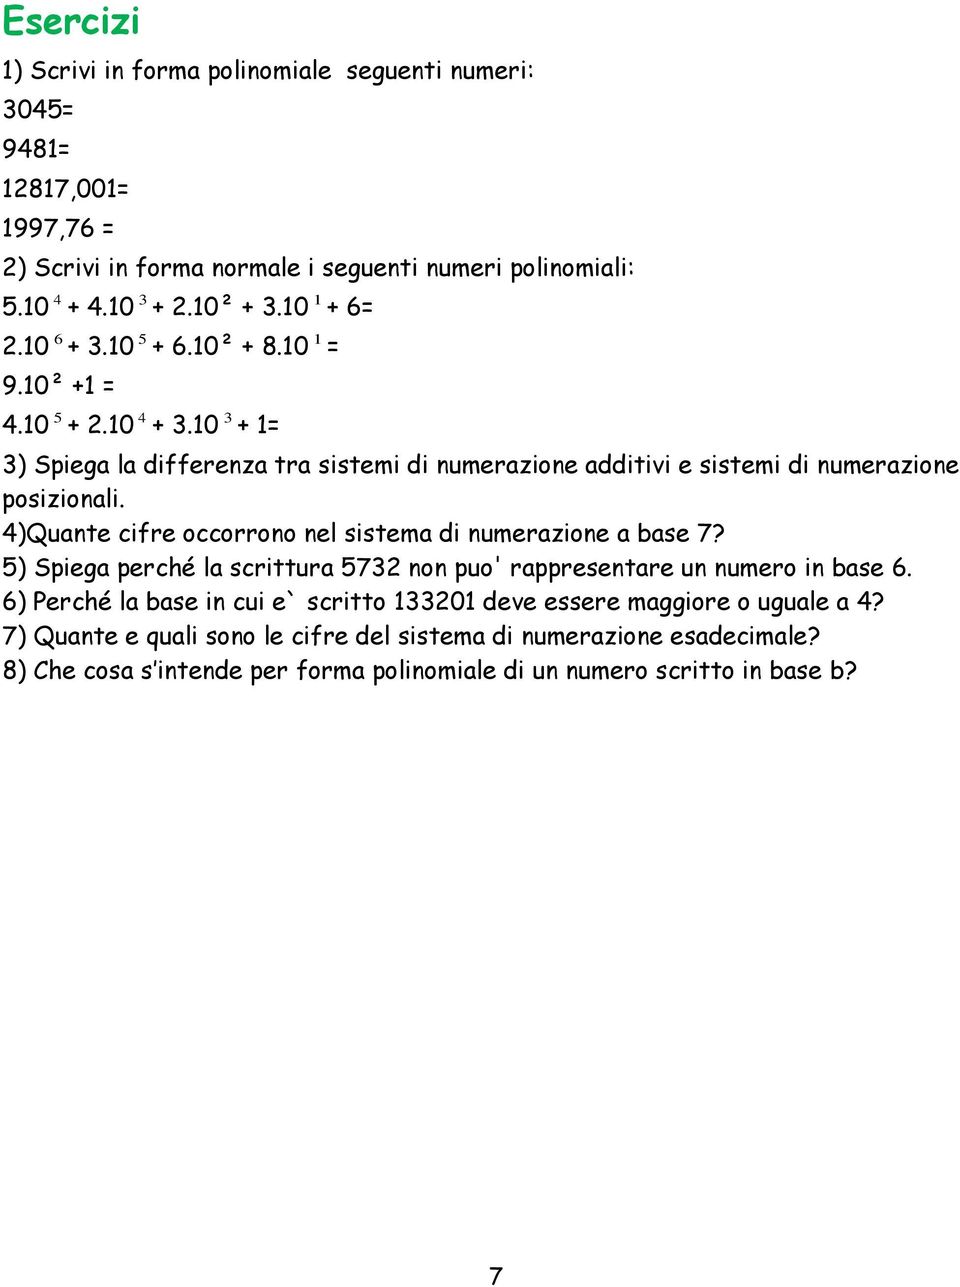 10 3 + 1= 3) Spiega la differenza tra sistemi di numerazione additivi e sistemi di numerazione posizionali. 4)Quante cifre occorrono nel sistema di numerazione a base 7?